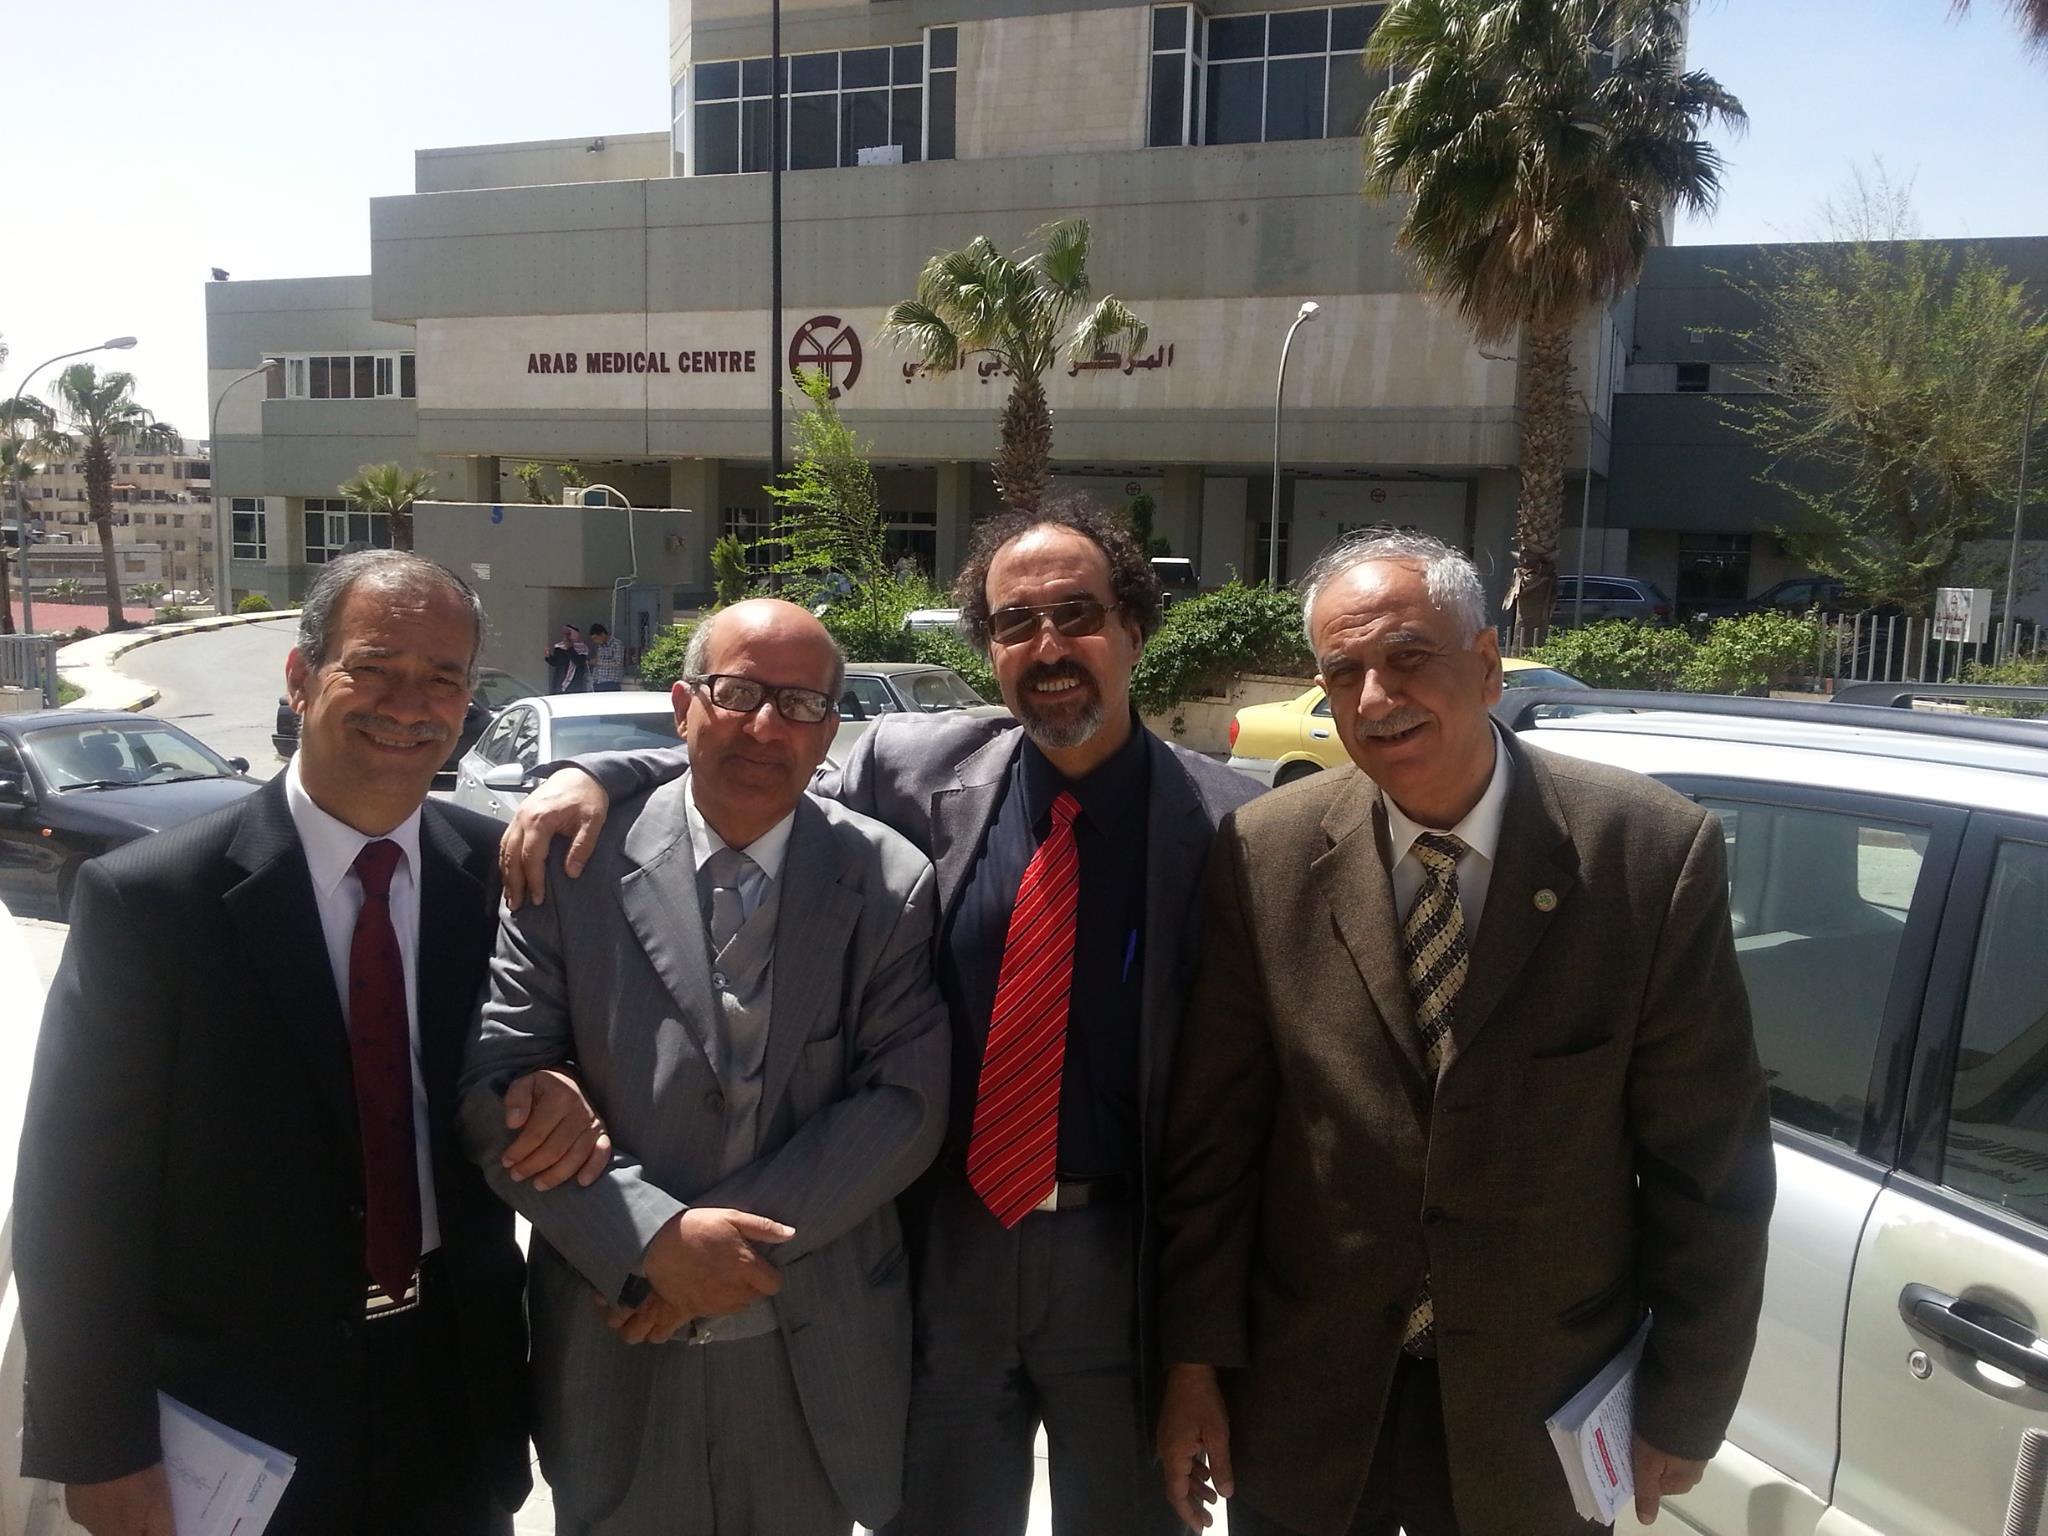 من الذاكره مع الزملاء امام مستشفى المركز العربي الطبي 14-4-2014